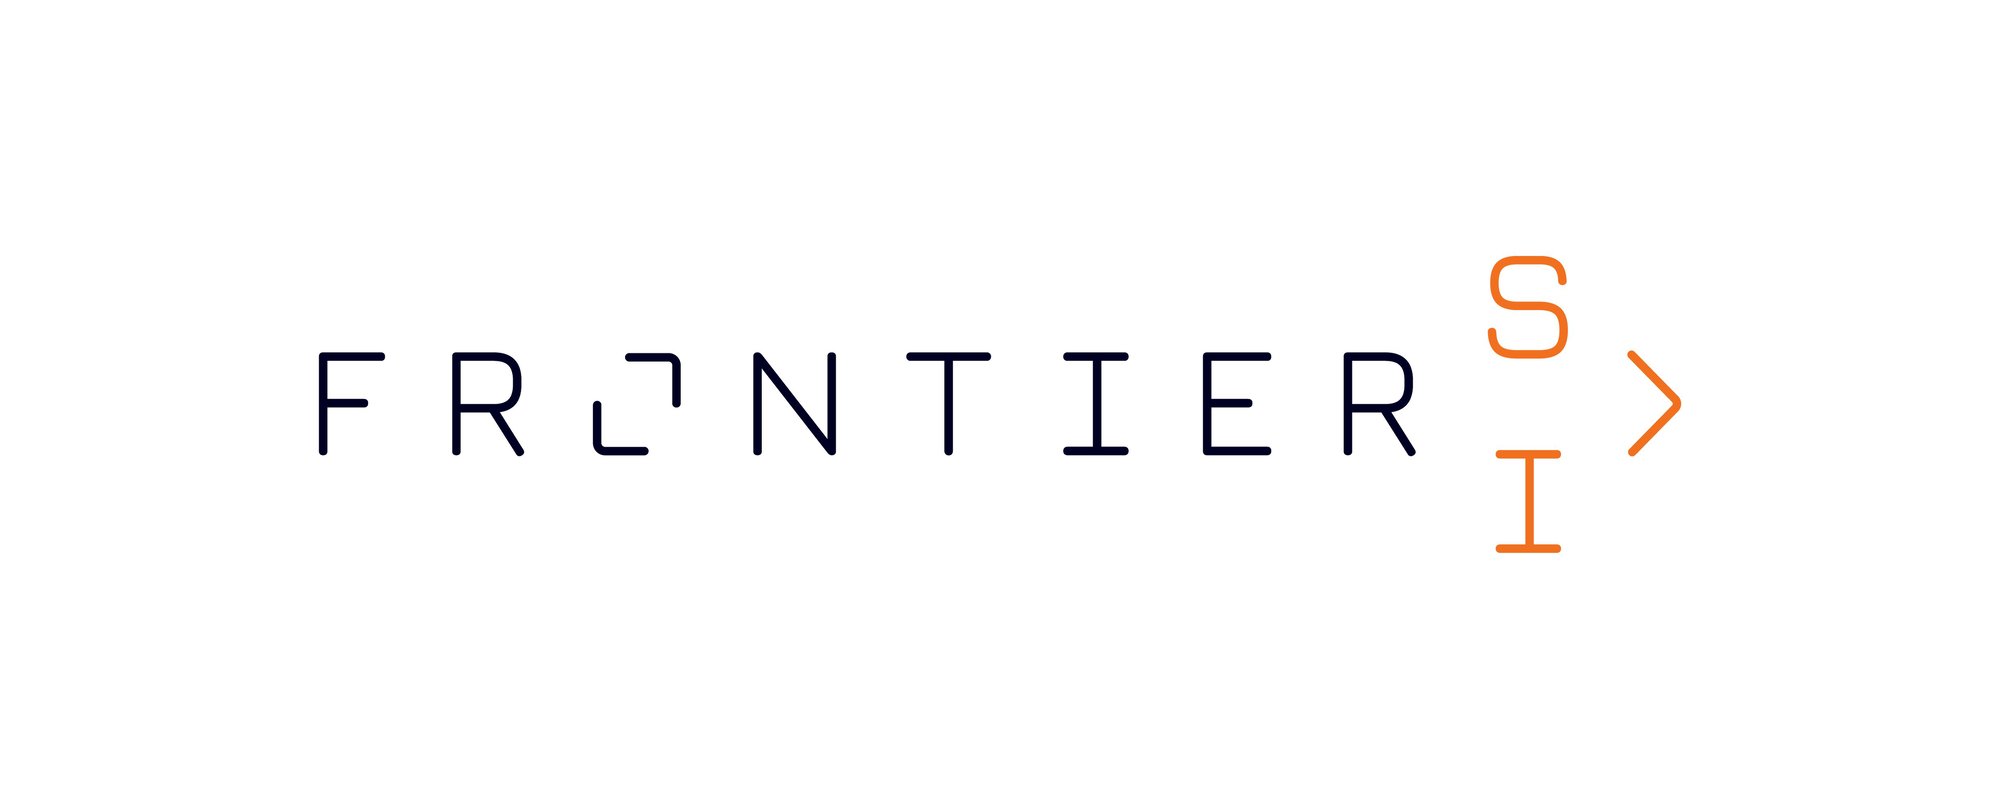 FrontierSI_Logo_Primary